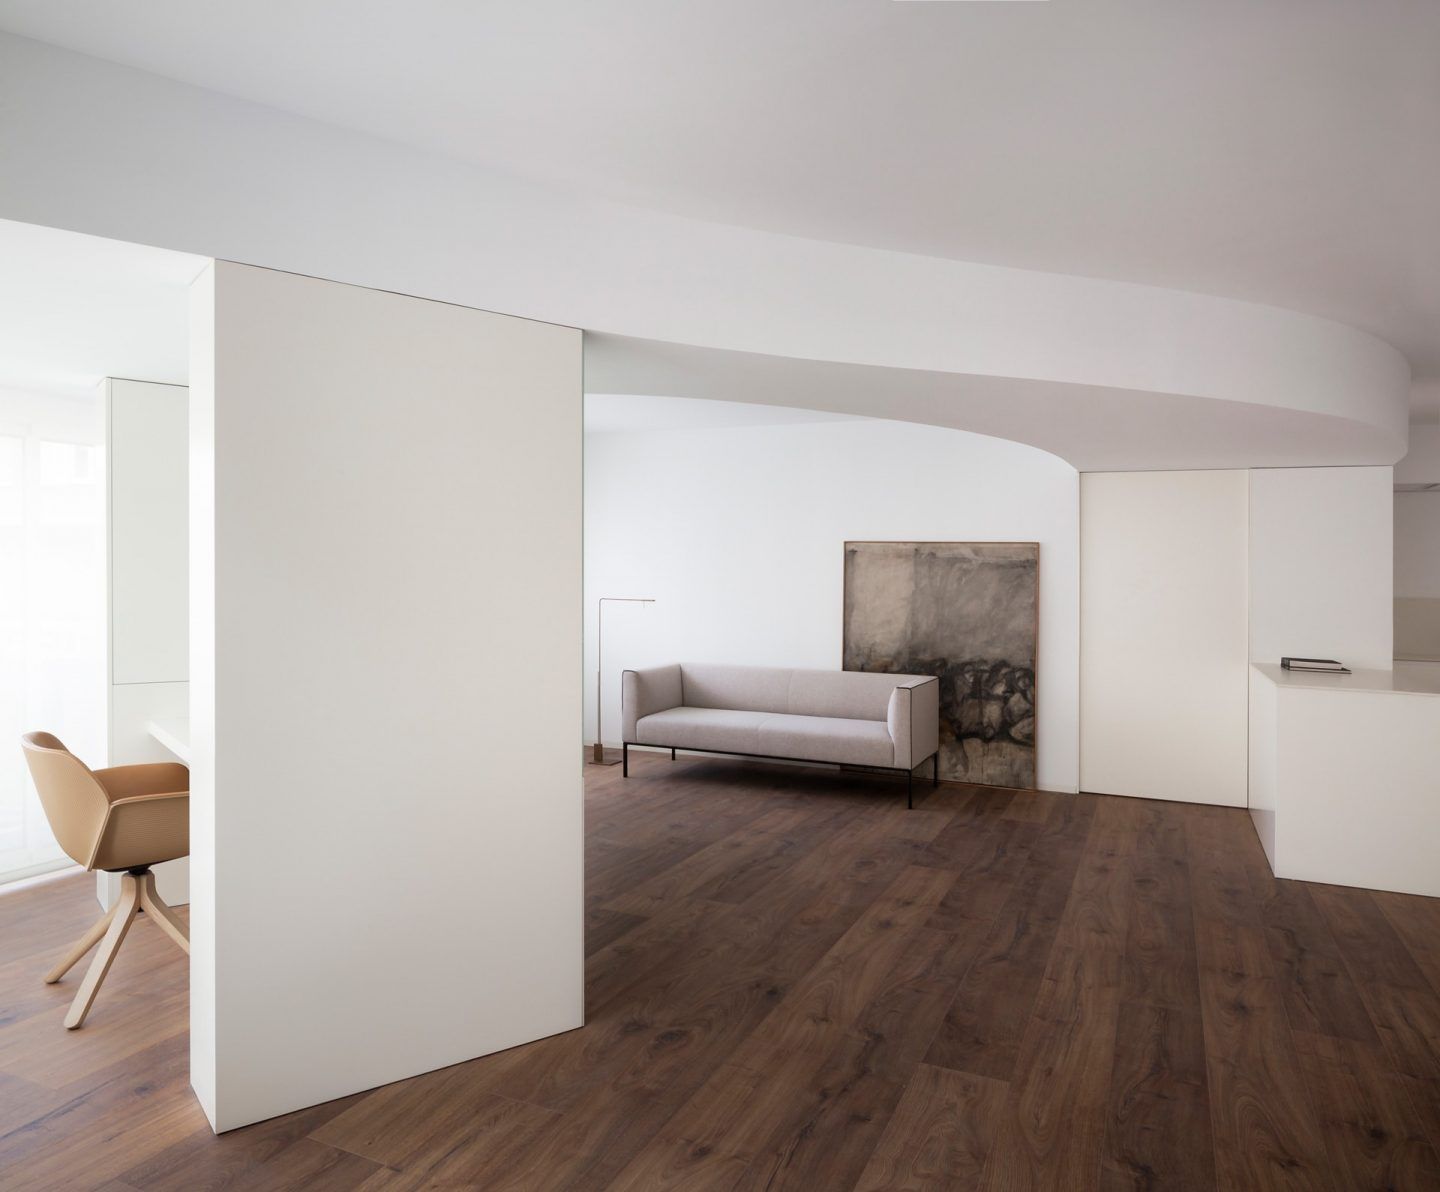 IGNANT-Architecture-Balzar-Arquitectos-Valencia-Apartment-003